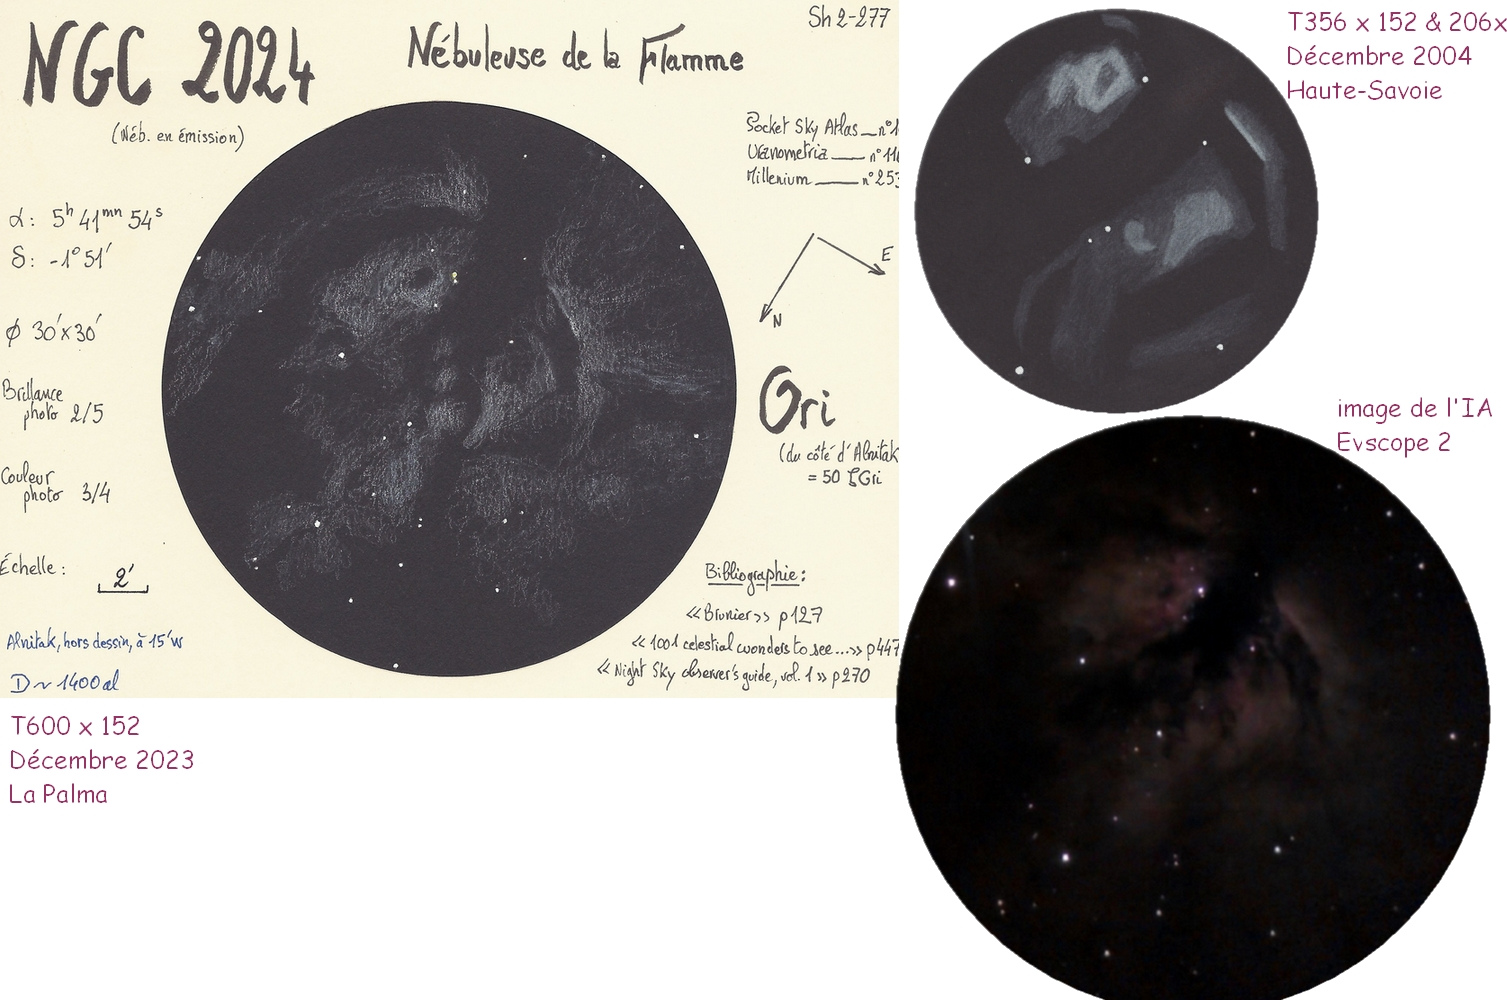 65b6c05f70743_NGC2024comparatif.jpg.f72ac17ef8f78a2b8dde220a873311e1.jpg